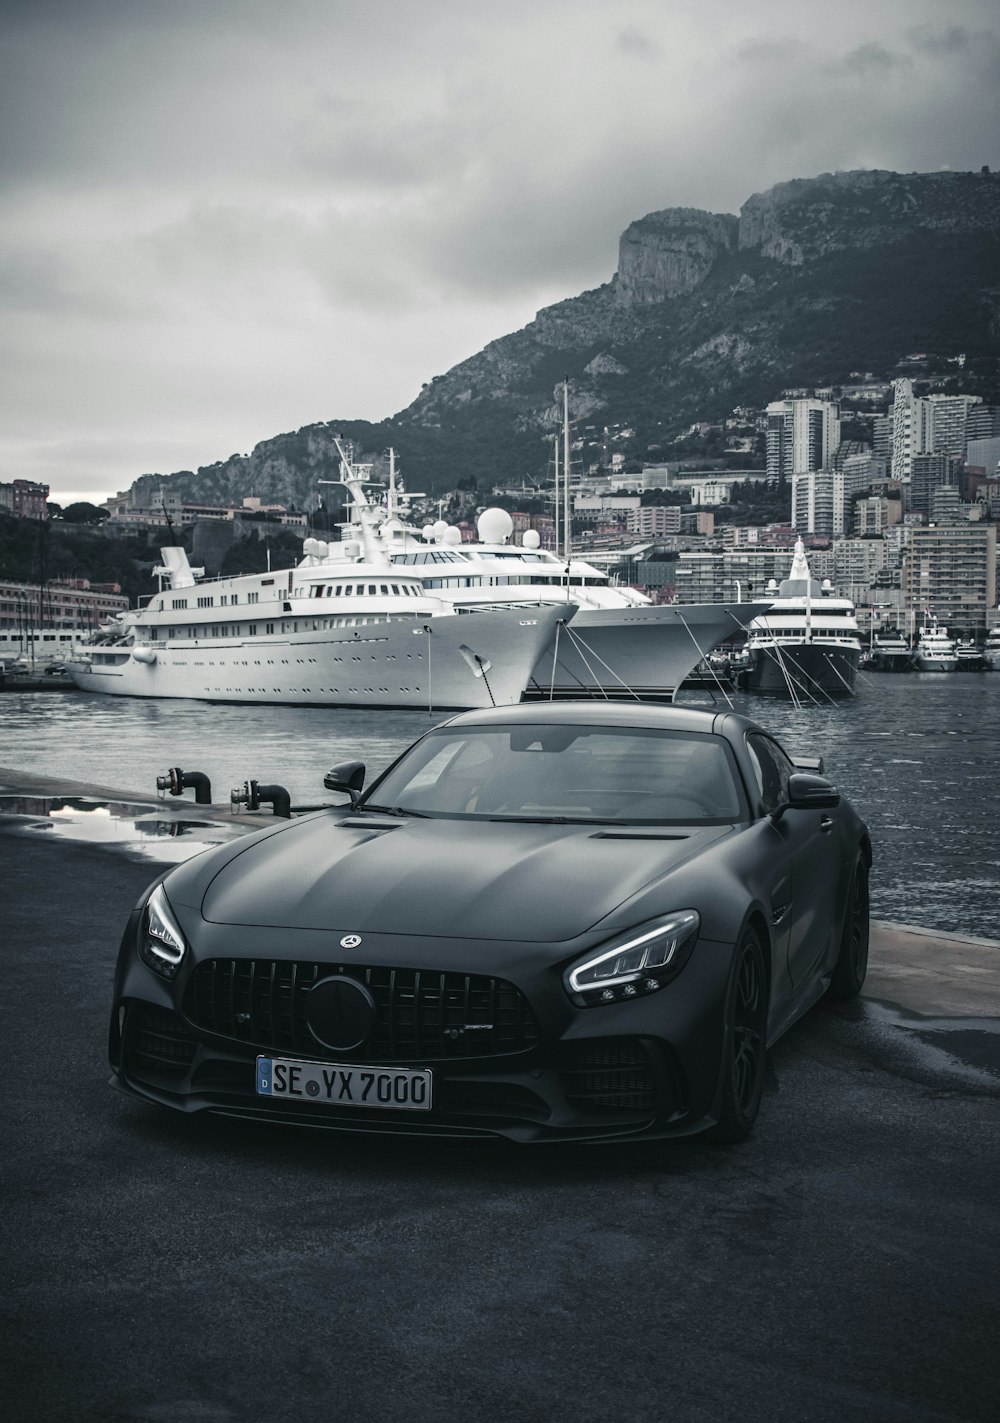 Black Mercedes Pictures | Download Free Images on Unsplash